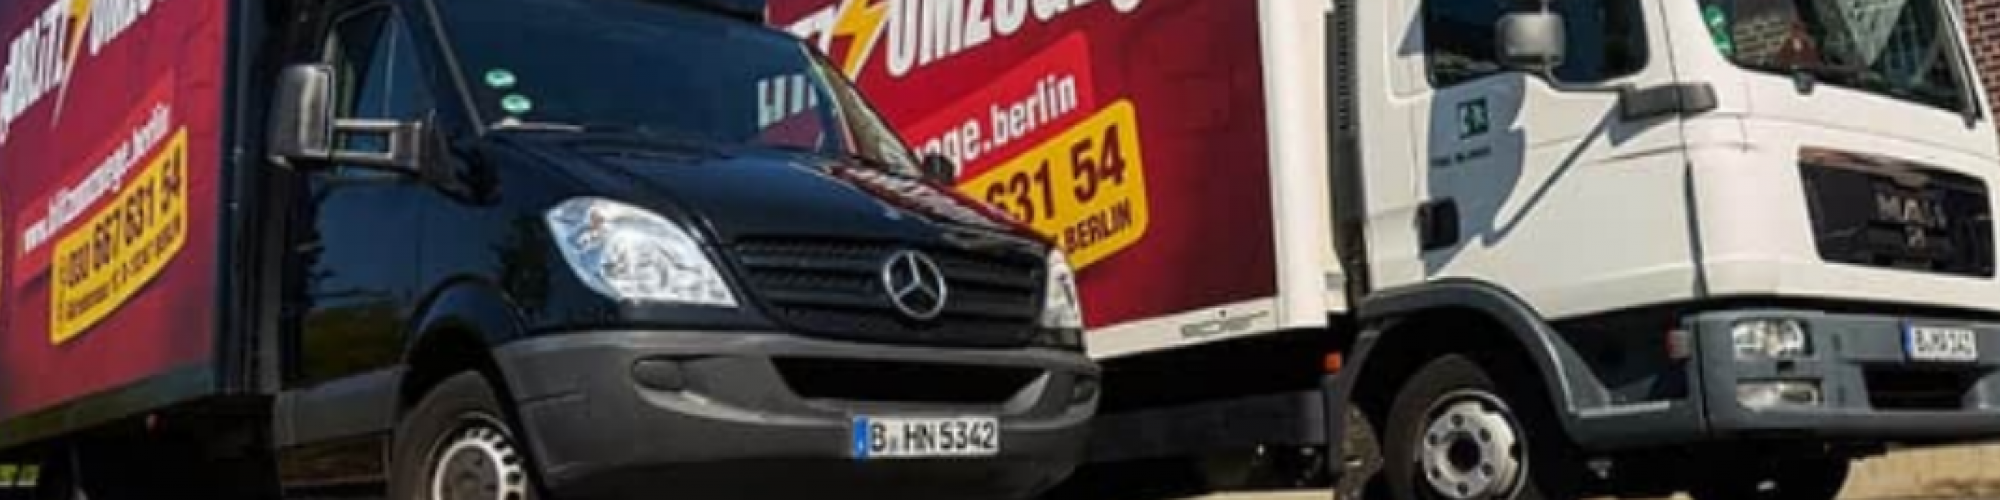 Blitz Umzüge - Umzugsfirma Berlin - Umzug Berlin